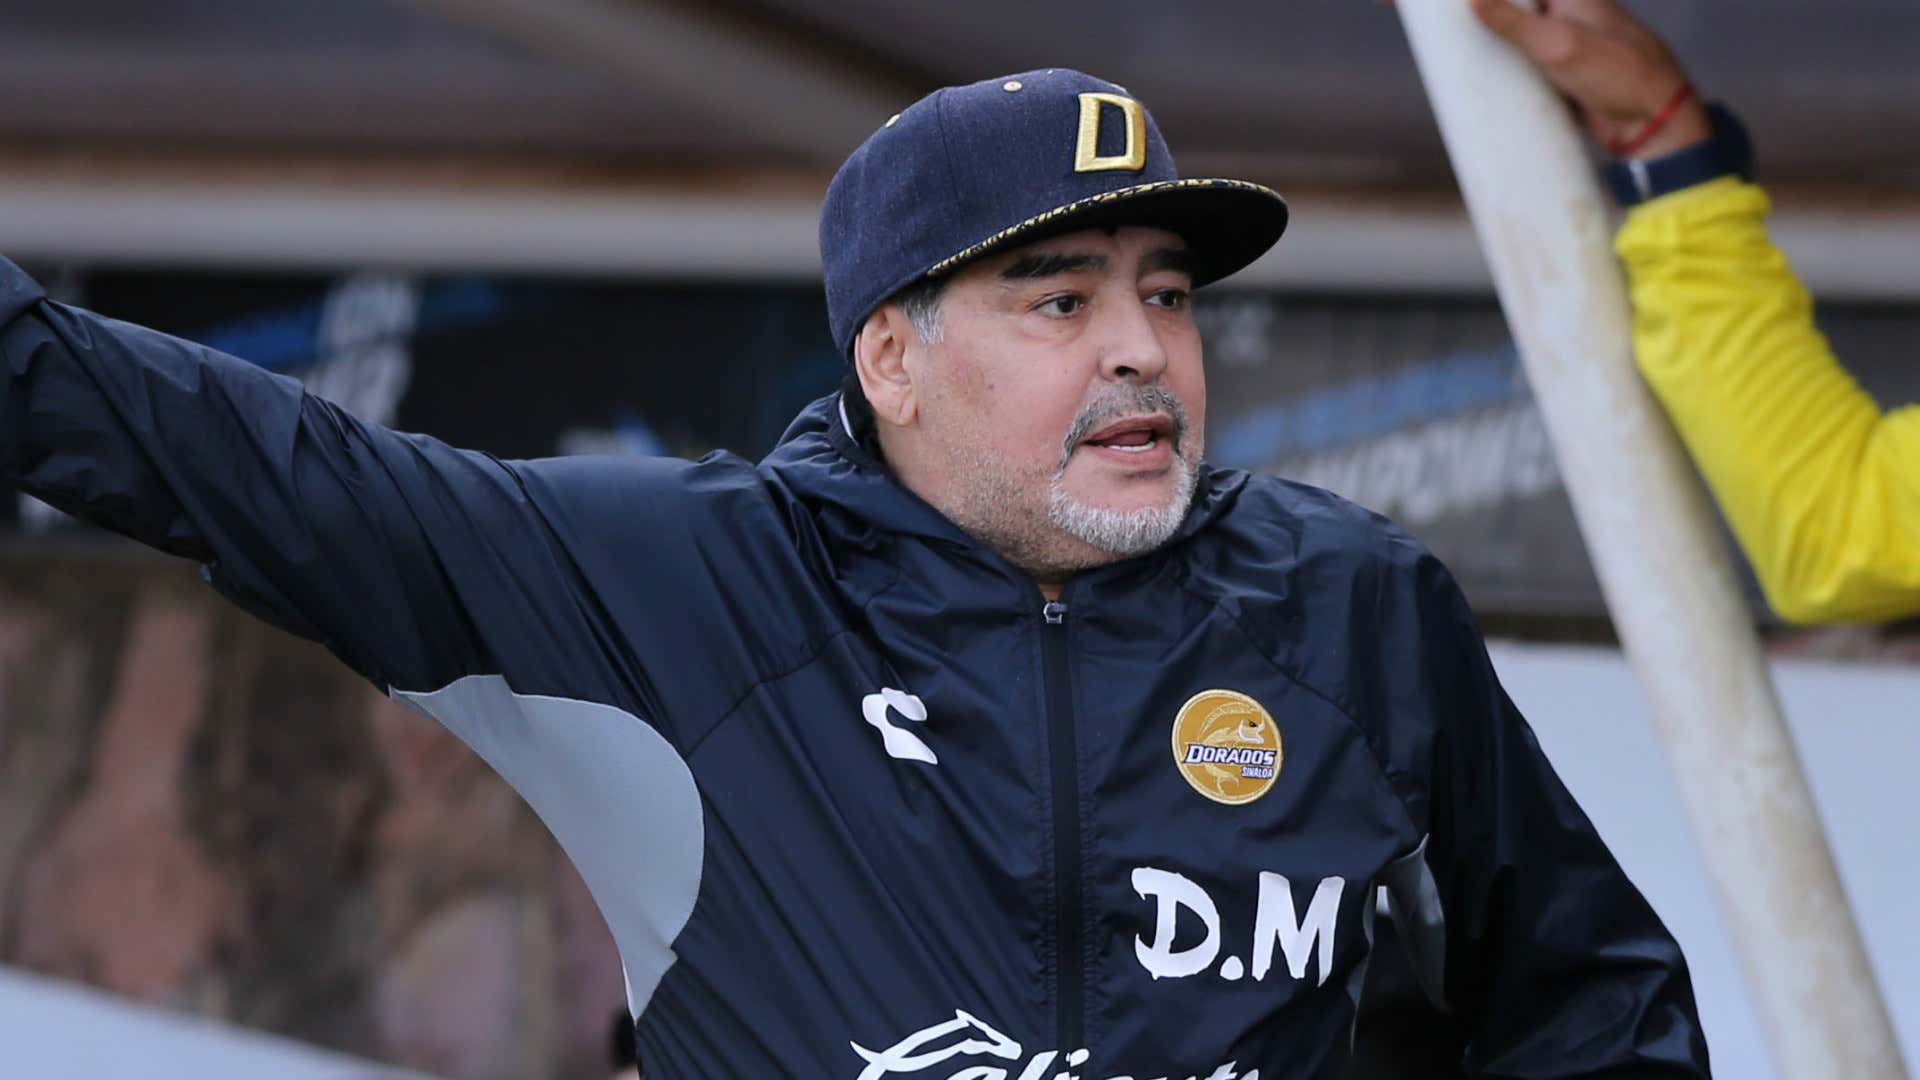 Diego Maradona Dorados 2018